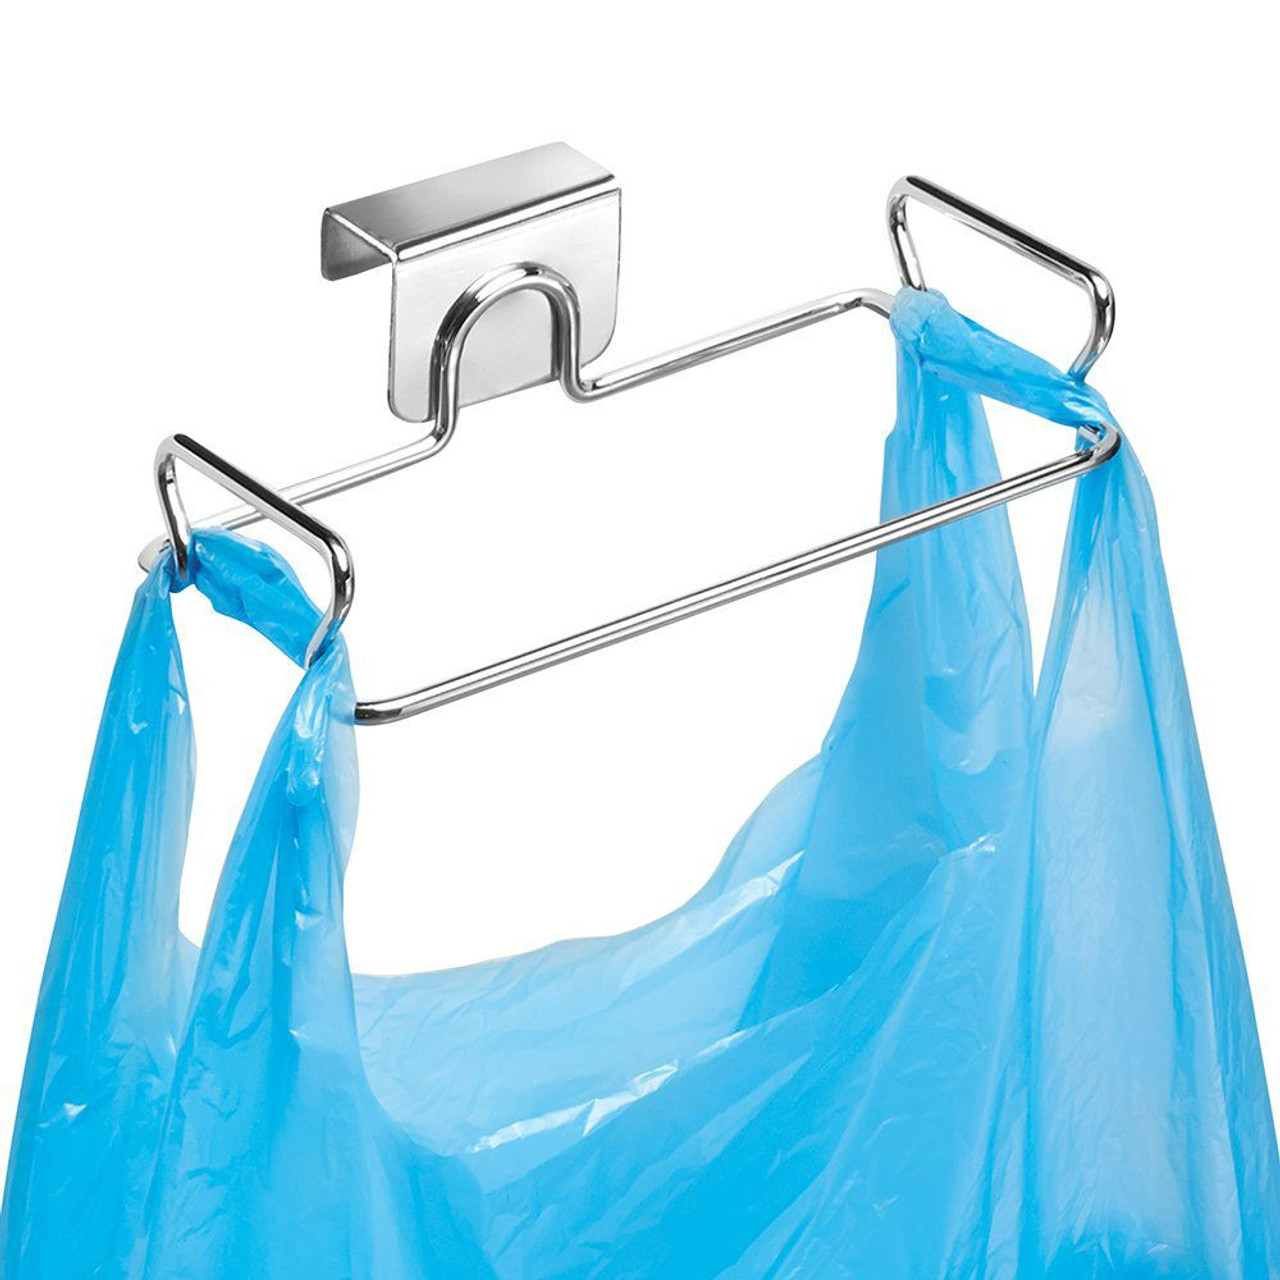 Cabinet Plastic Bag Holder Shop - www.edoc.com.vn 1693477523